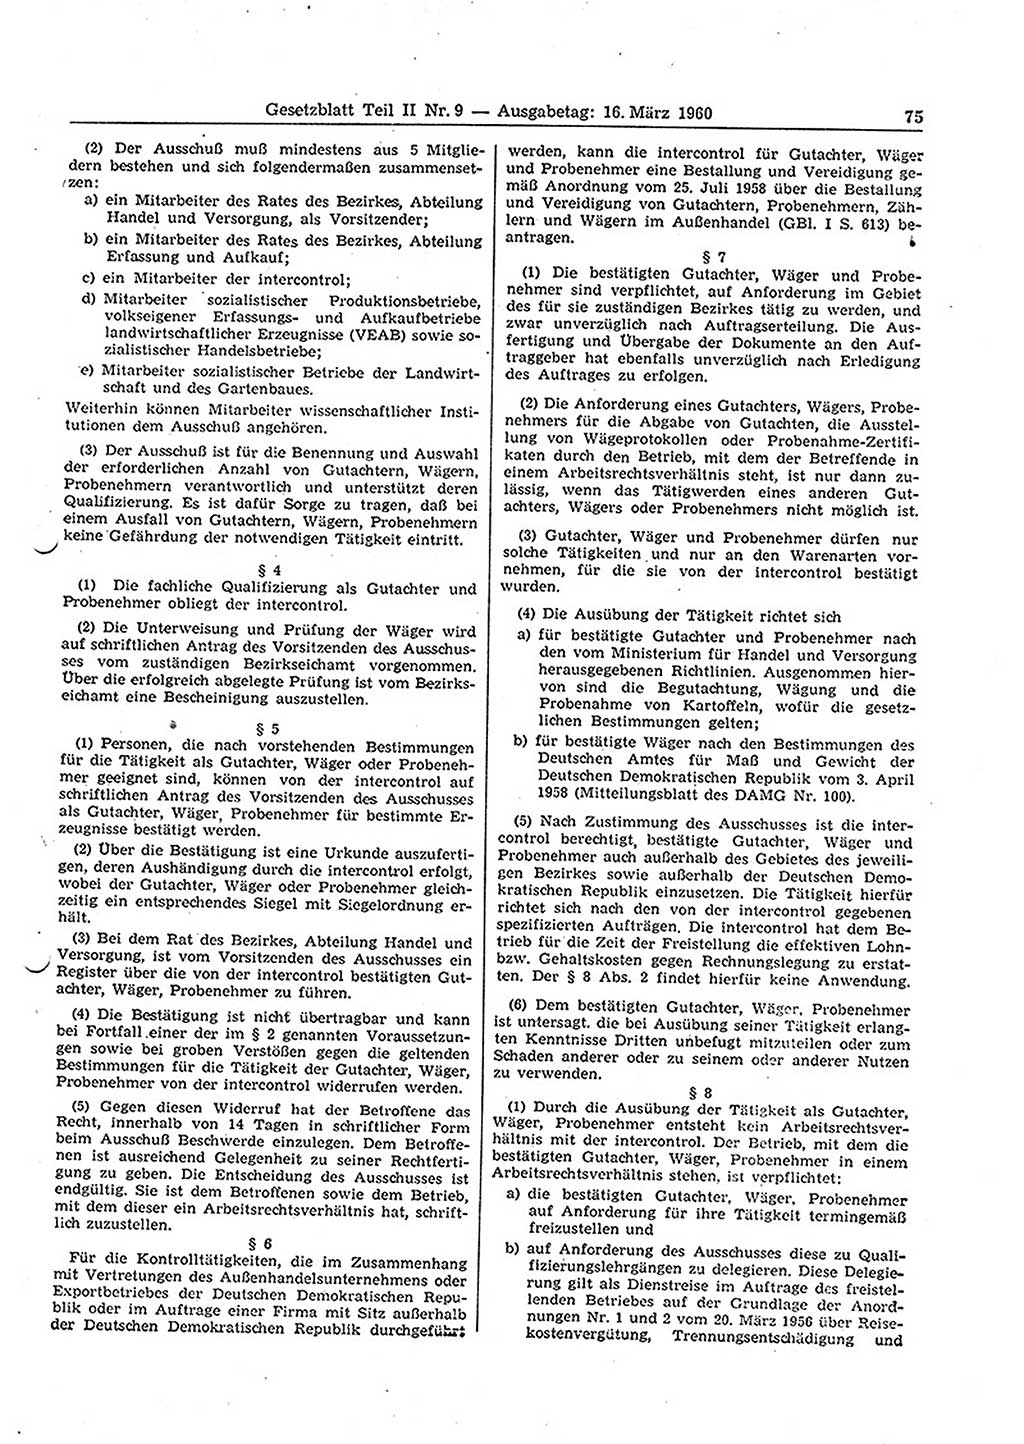 Gesetzblatt (GBl.) der Deutschen Demokratischen Republik (DDR) Teil ⅠⅠ 1960, Seite 75 (GBl. DDR ⅠⅠ 1960, S. 75)